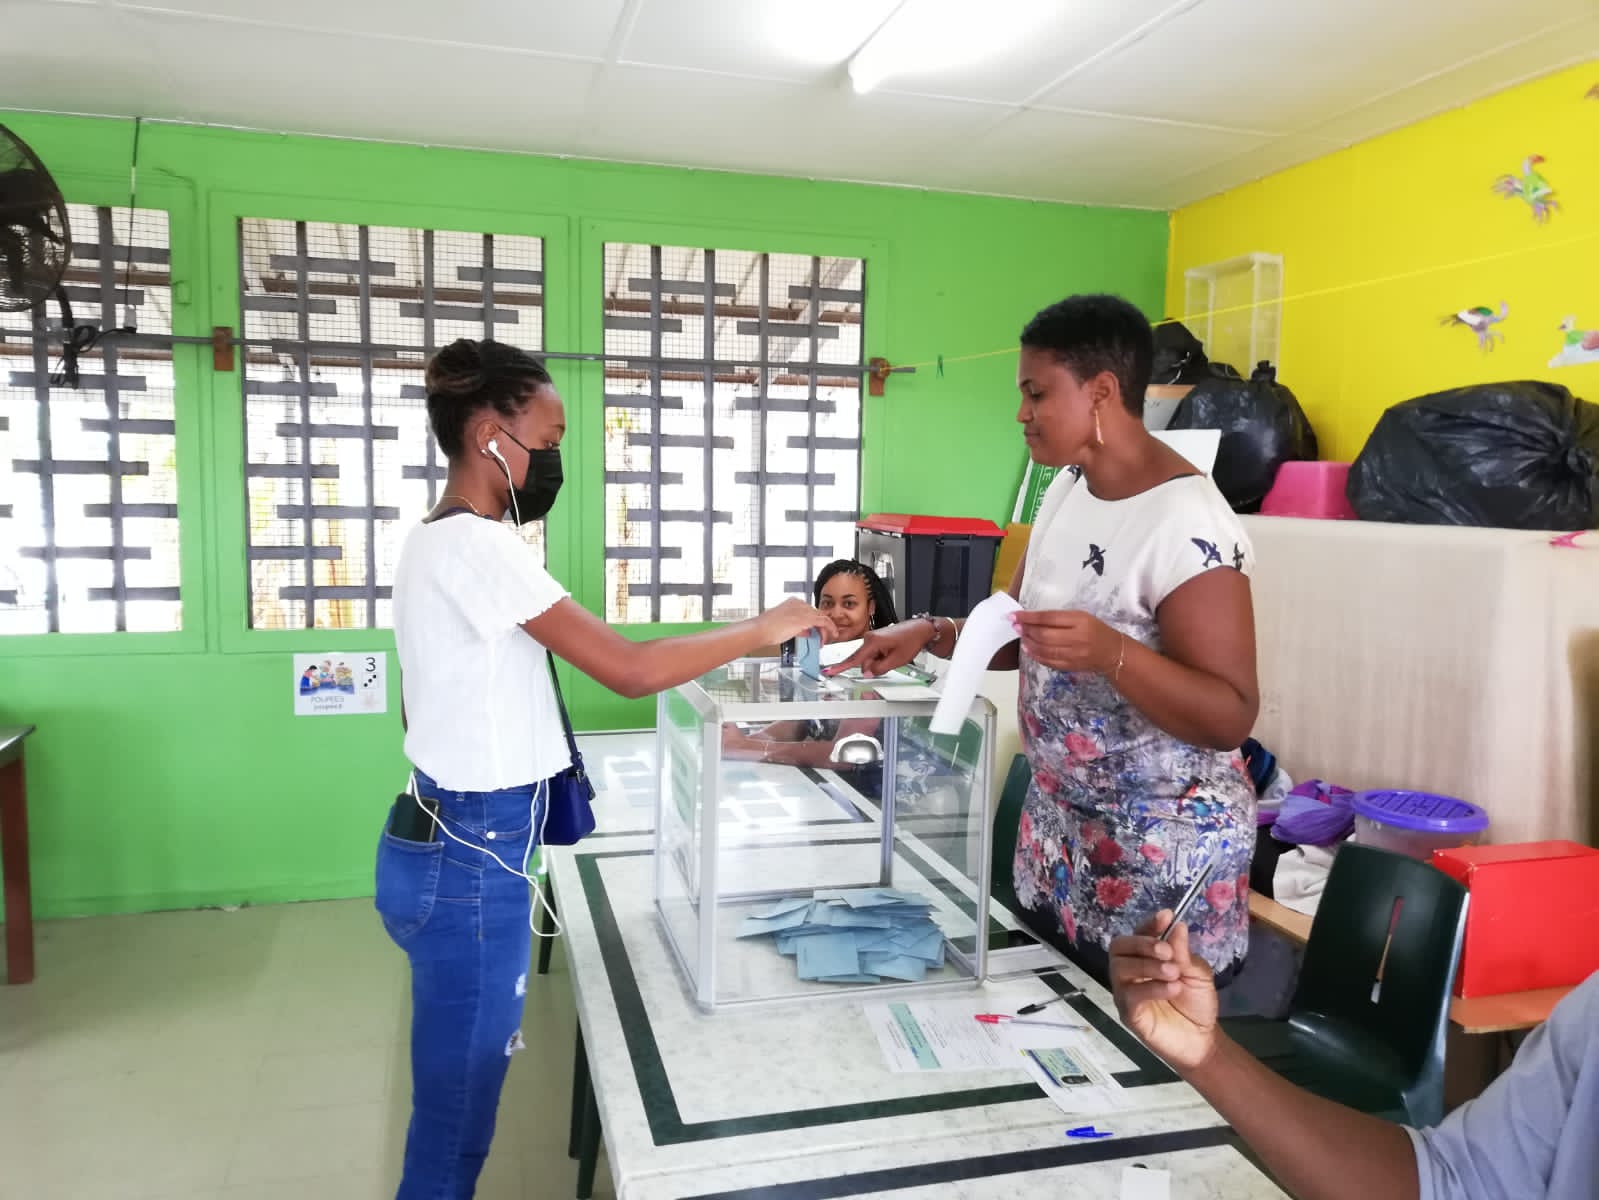     Premier tour de la présidentielle : 35,1% de participation à 17 heures en Martinique  

